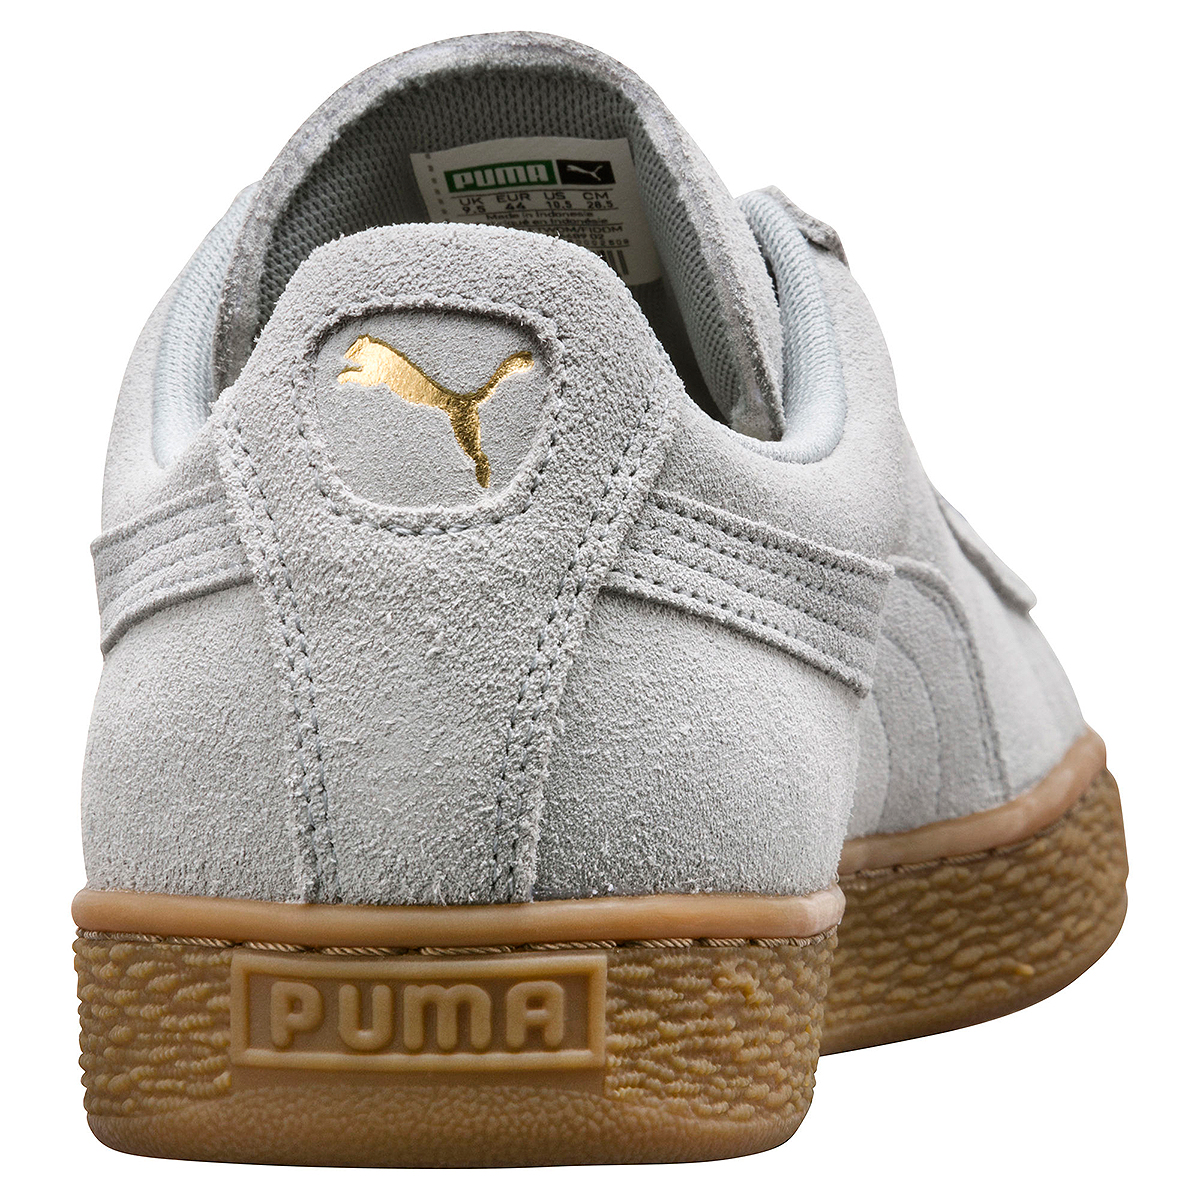 Puma Suede Classic Gum Unisex Sneaker Schuhe Leder grau 366489 02